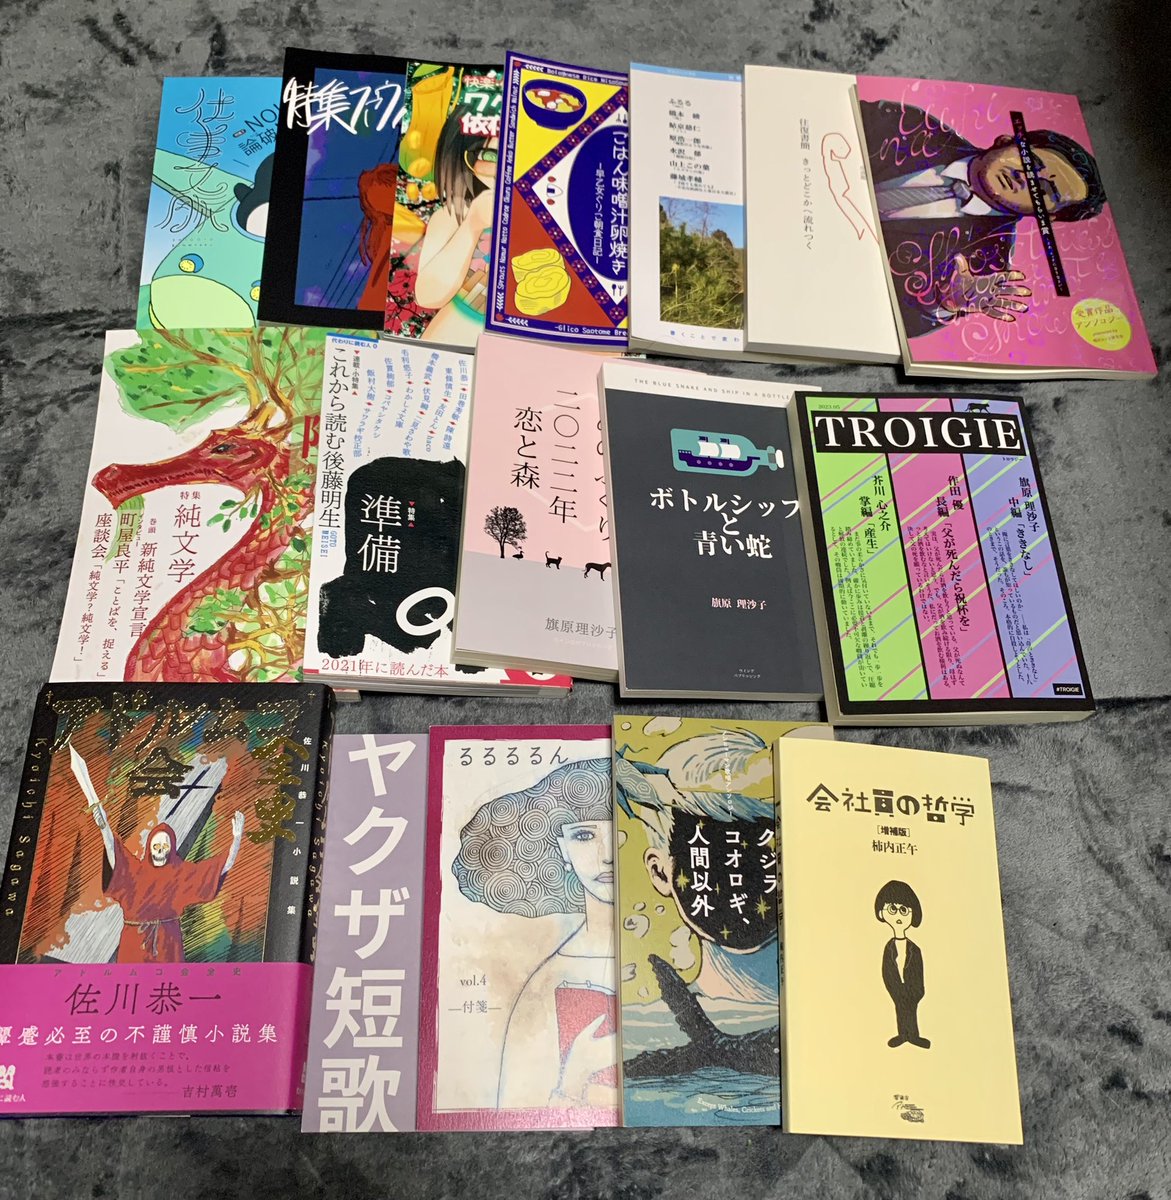 杉森仁香:文フリ東京V17 on Twitter: "#文学フリマで買った本 と、文学フリマでいただいたもの（本当にありがとうございます…お